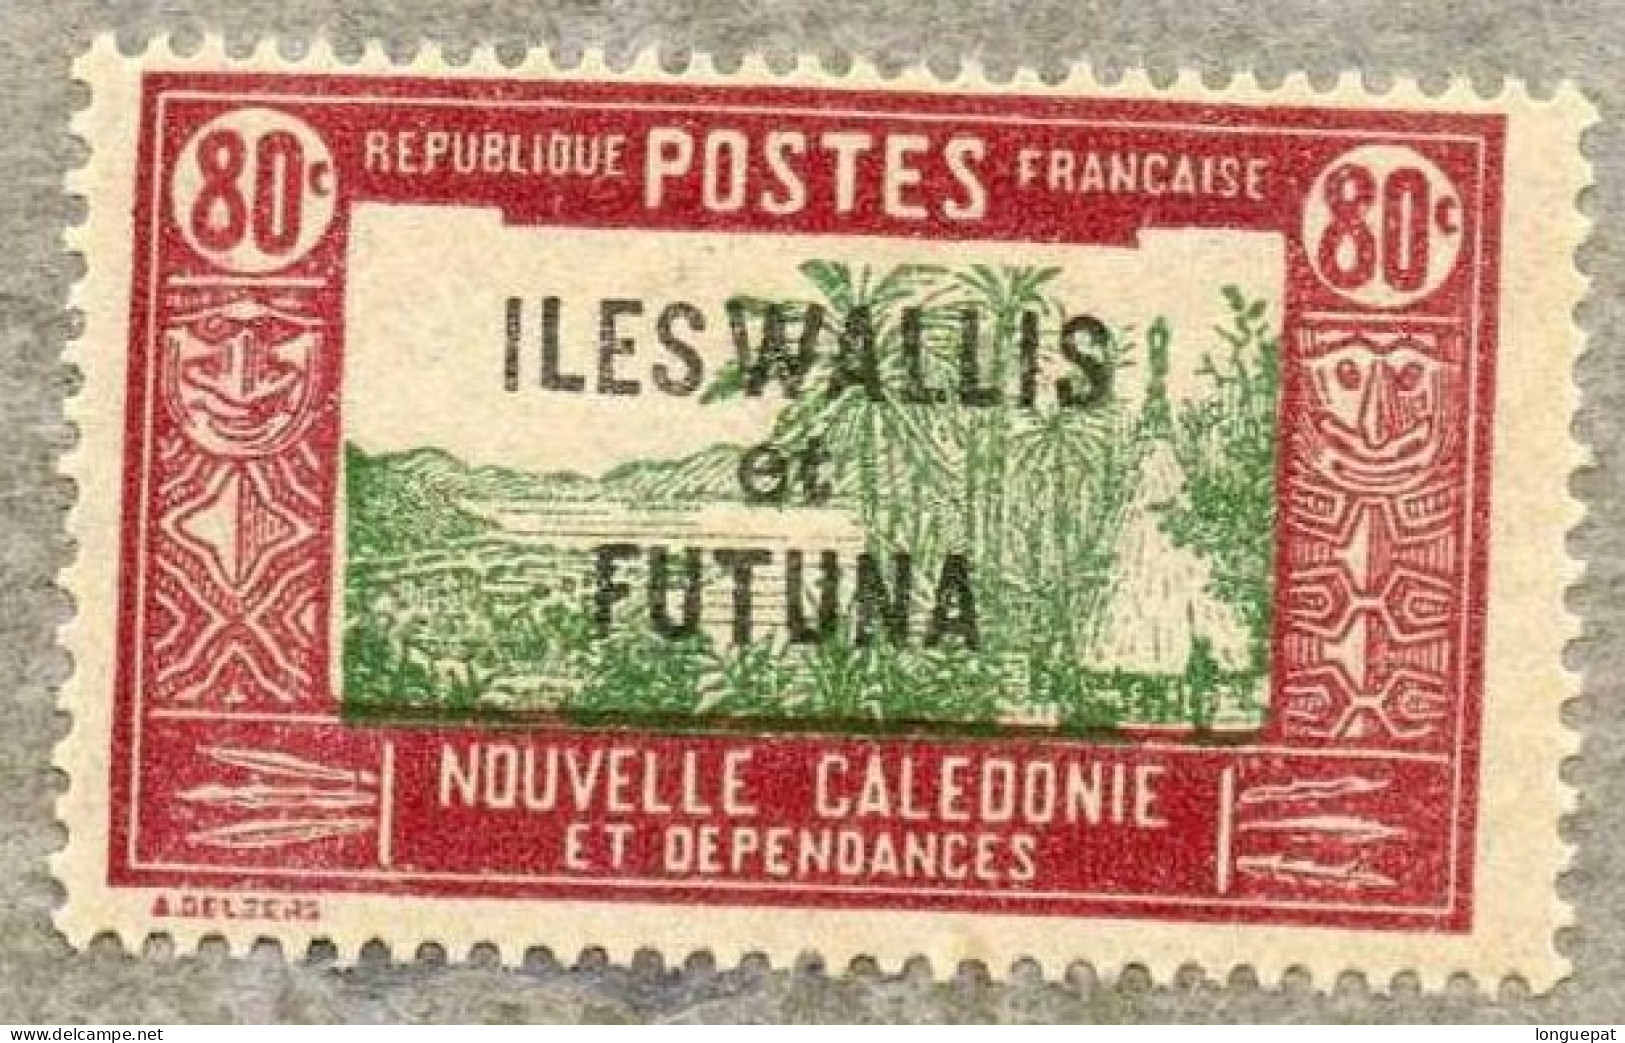 Wallis Et Futuna : Case De Chef Indigène - Timbre De Nouvelle-Calédonie De 1928/38, Surchargés - Neufs